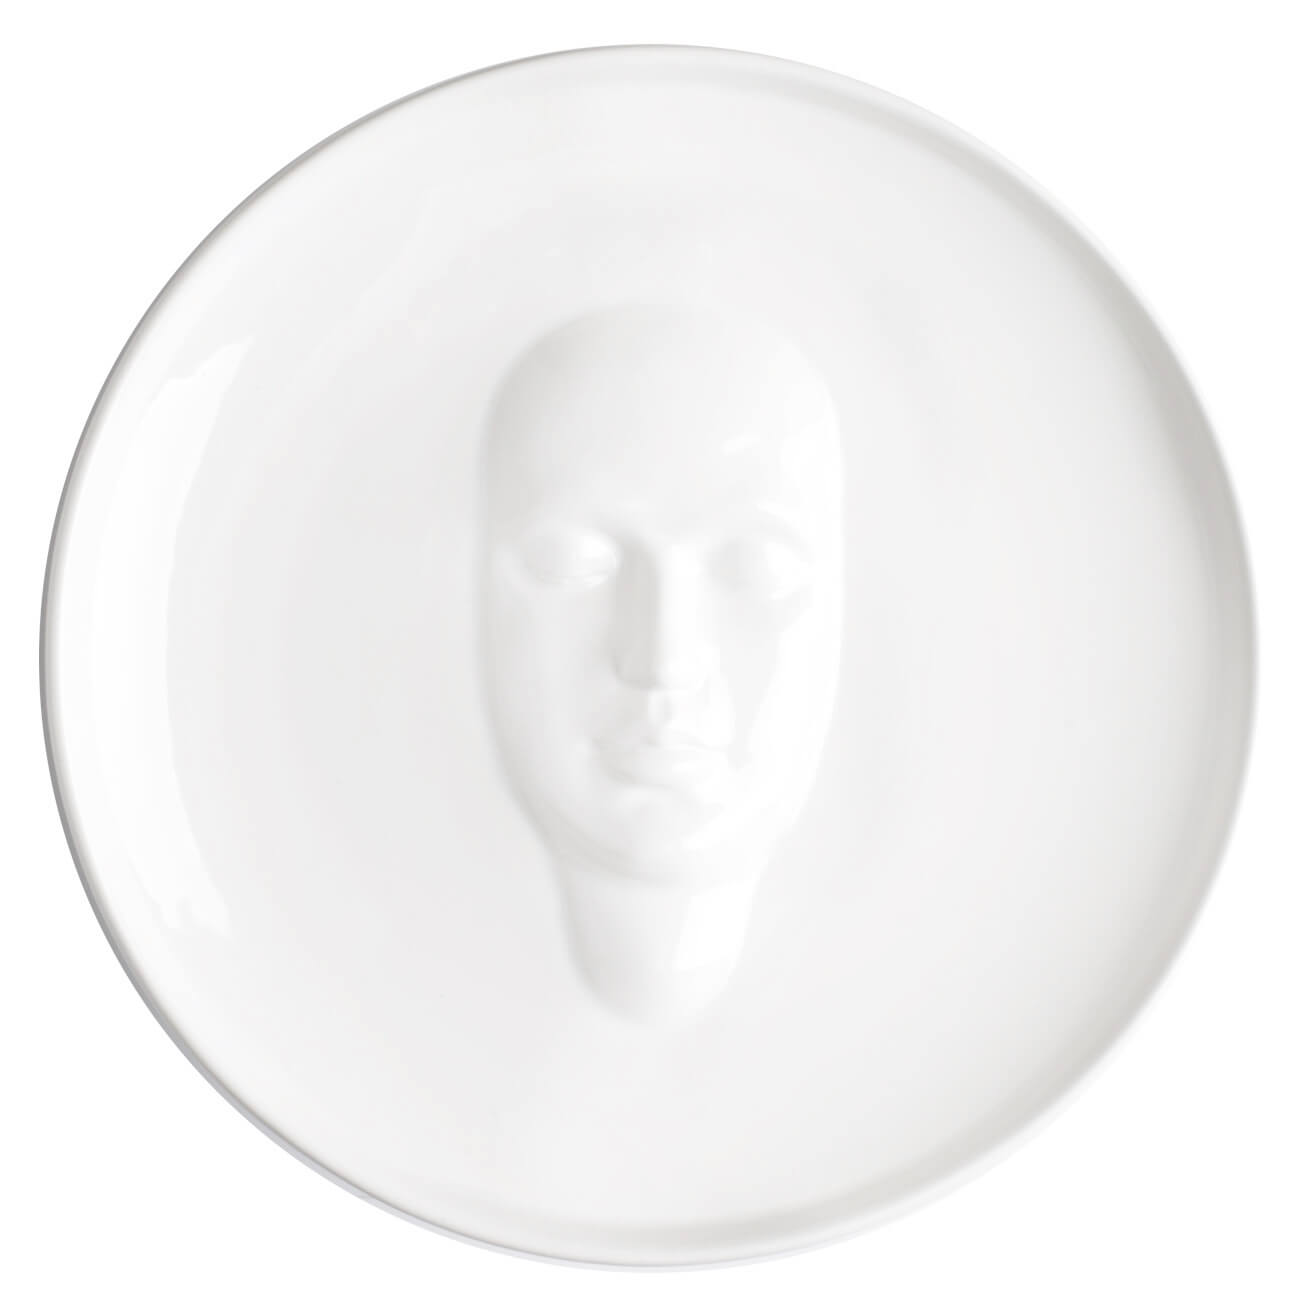 Блюдо, 24 см, керамика, белое, Лицо, Face блюдо керамика квадратное 15 см белое грейс daniks y4 3737